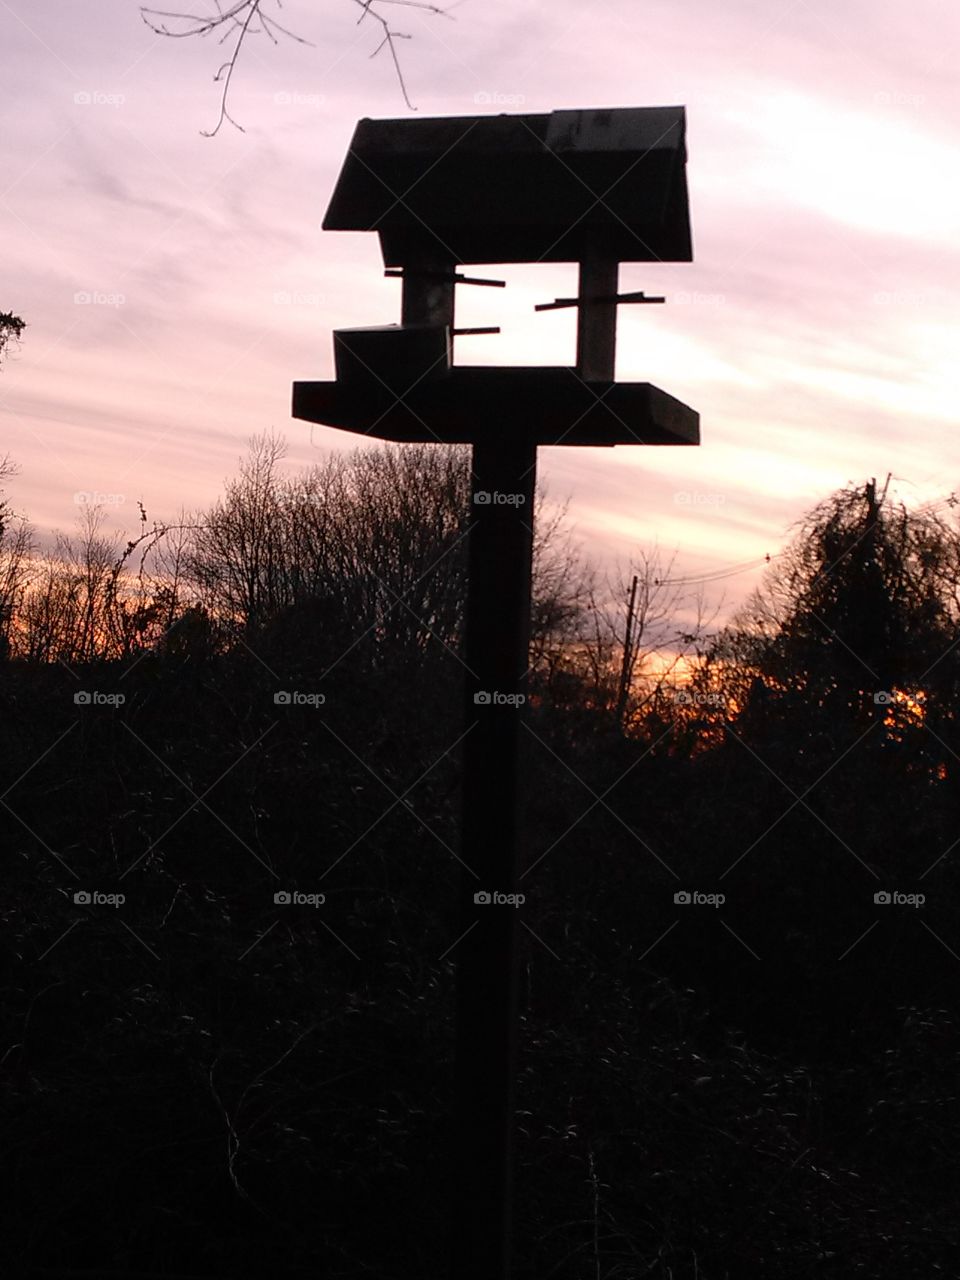 birdhouse at dusk